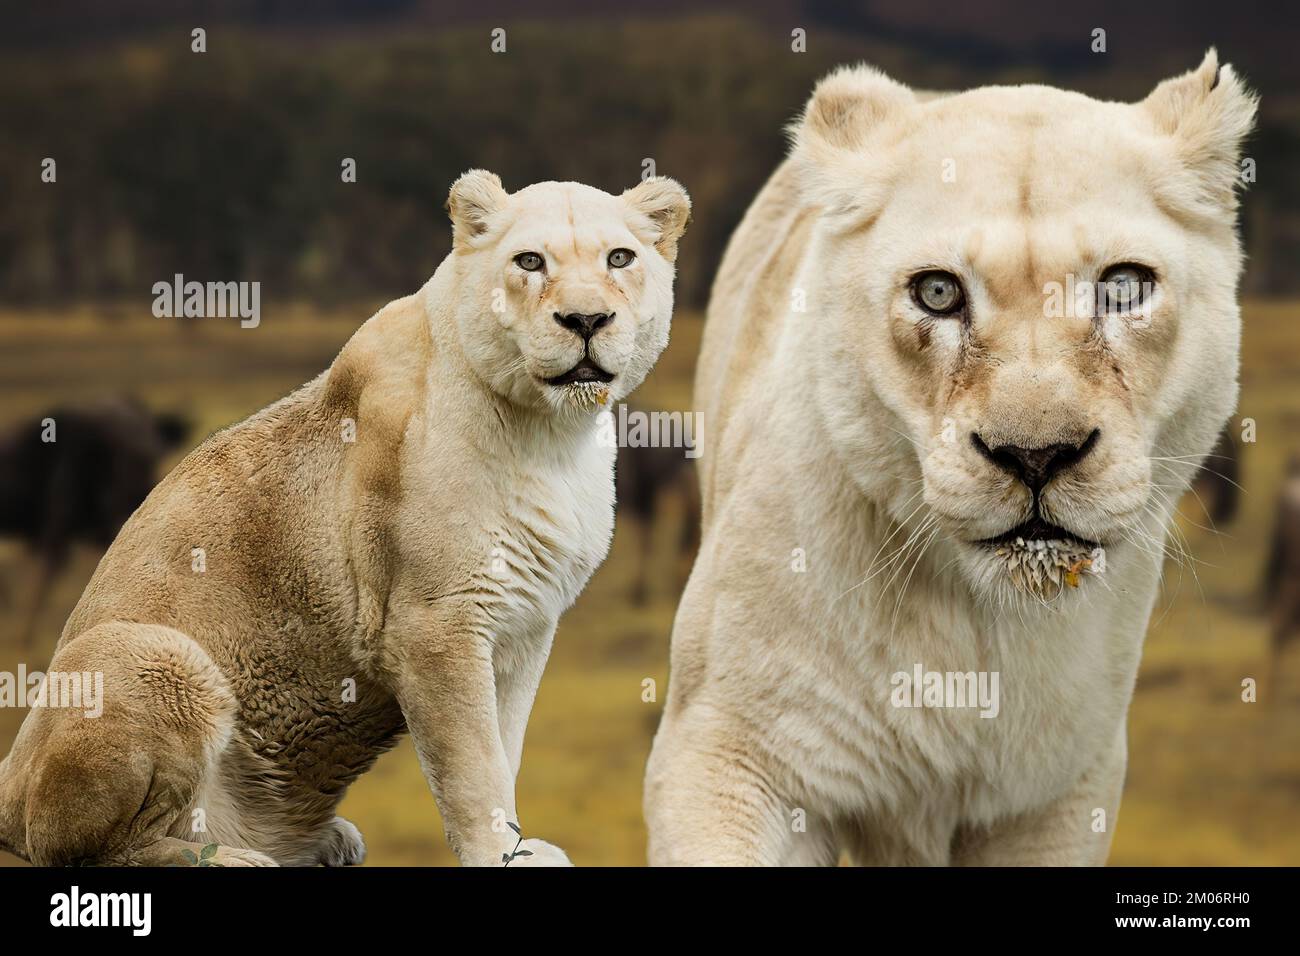 A rare white Lioness Stock Photo